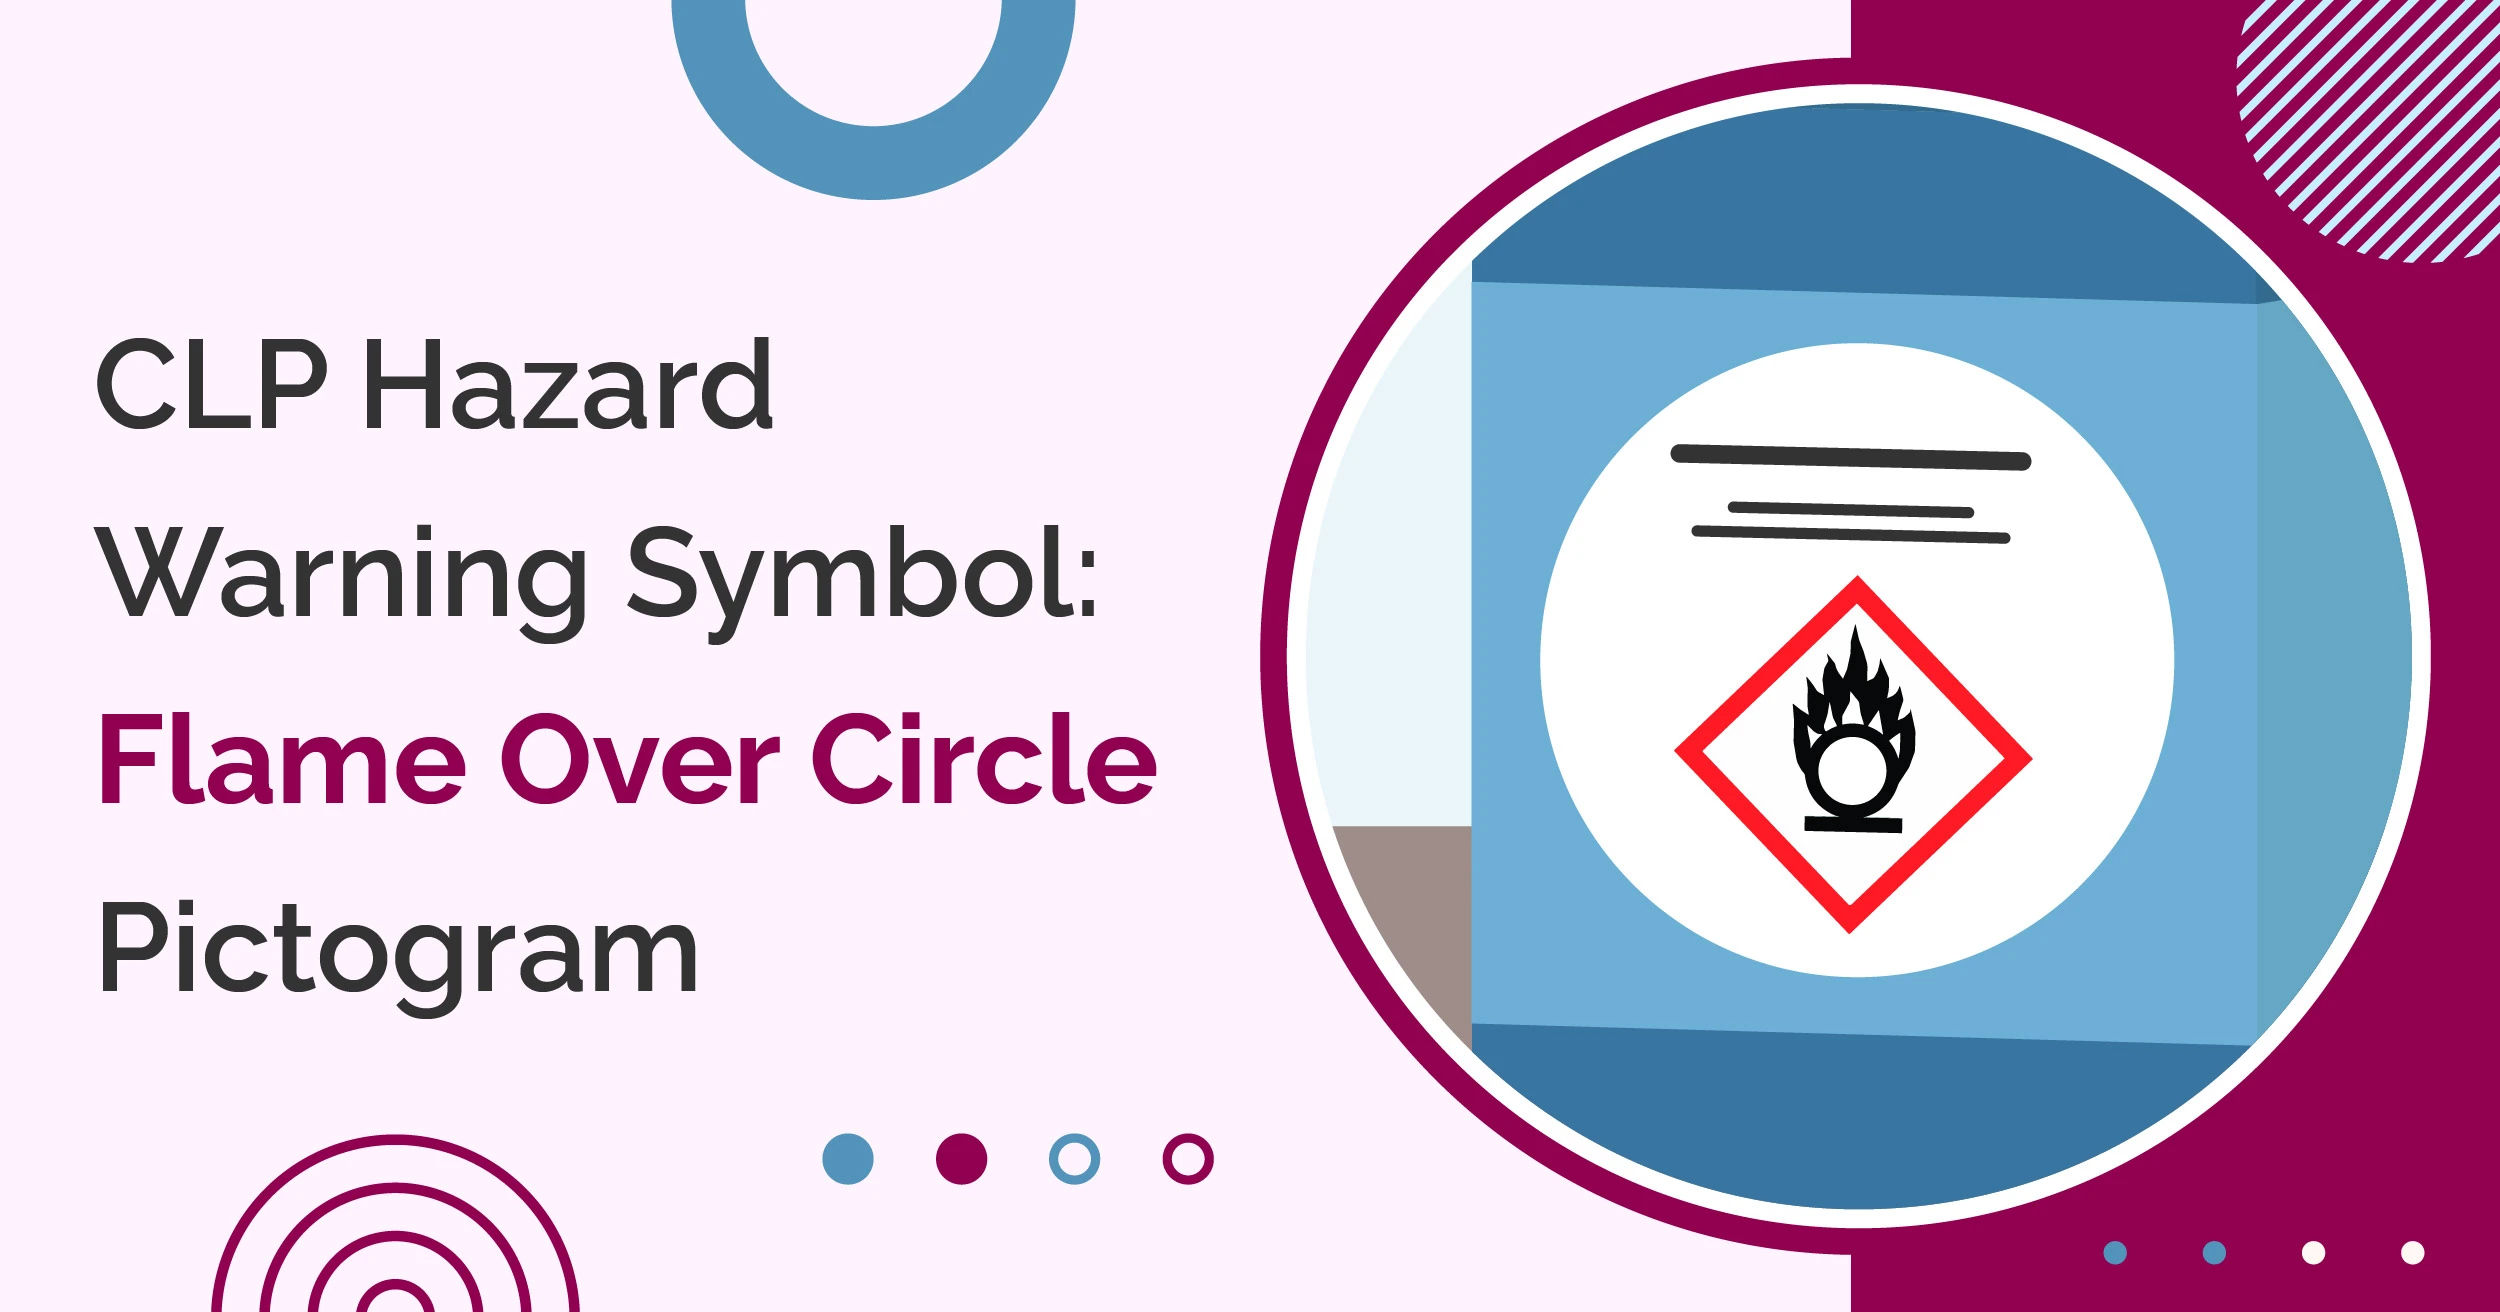 CLP Hazard Warning Symbol: Flame Over Circle Pictogram